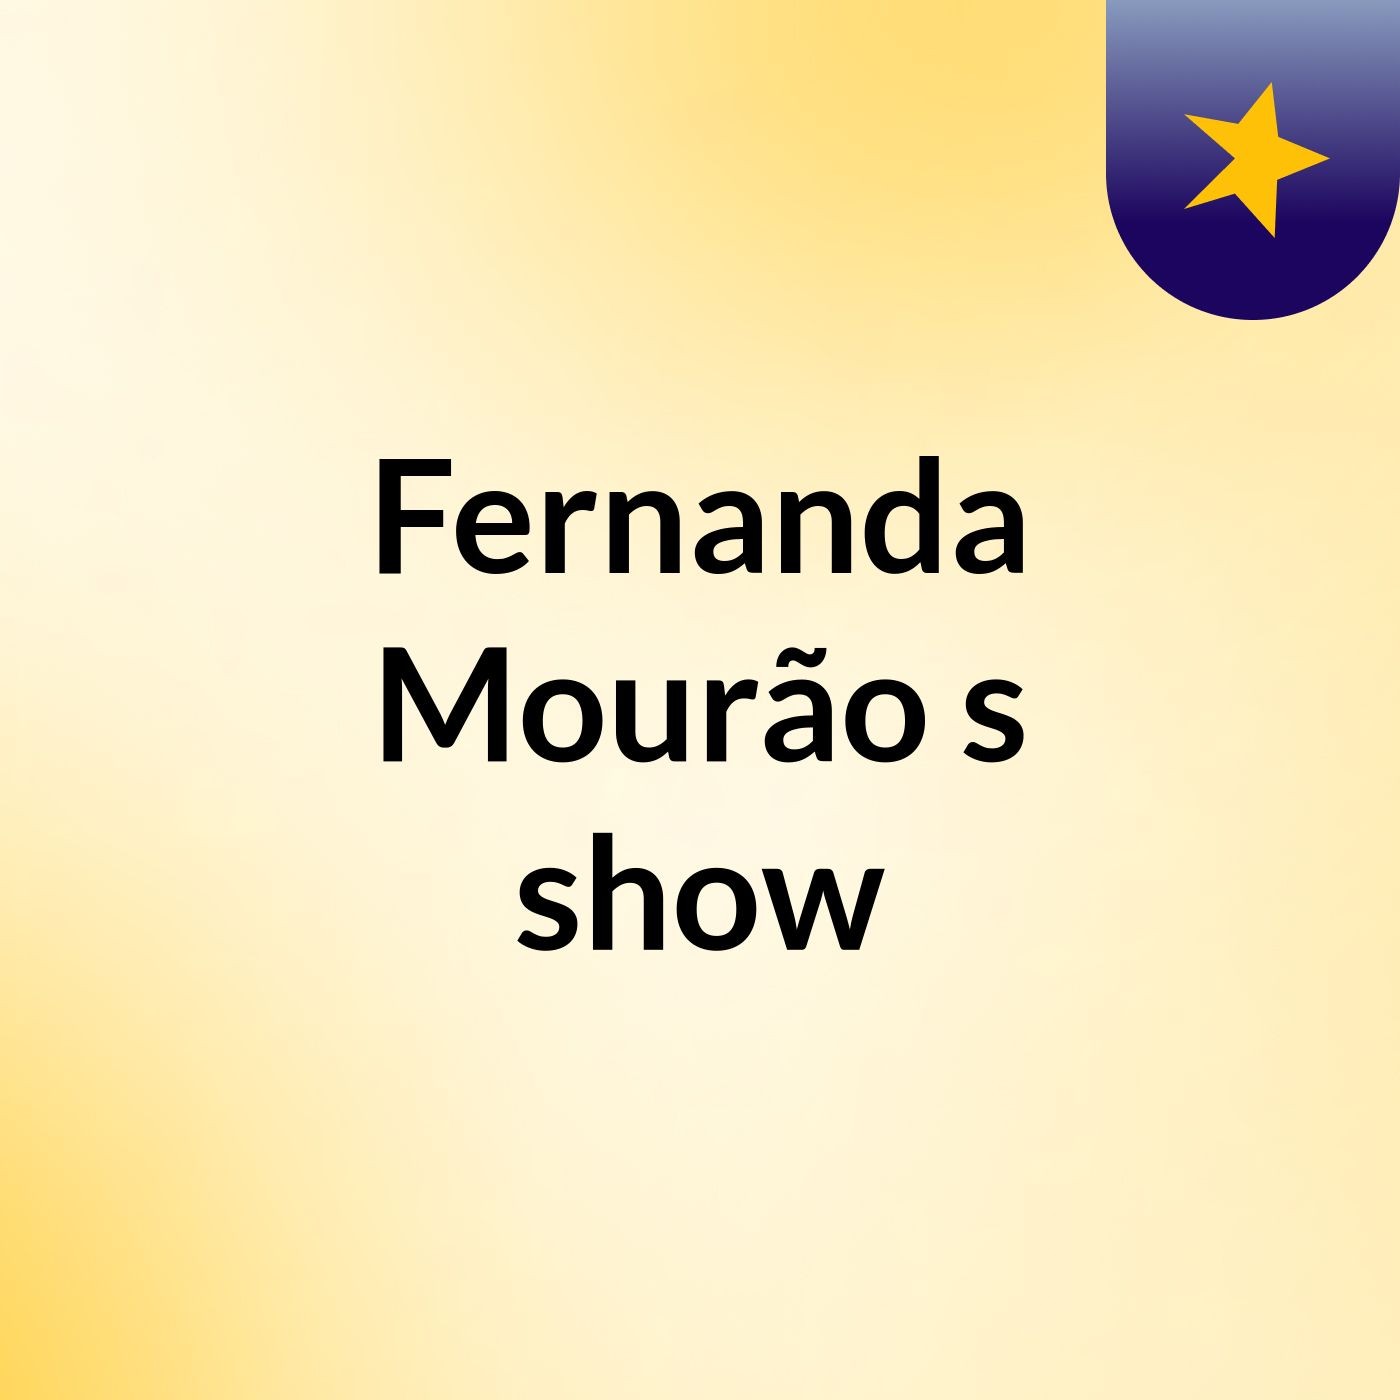 Fernanda Mourão's show